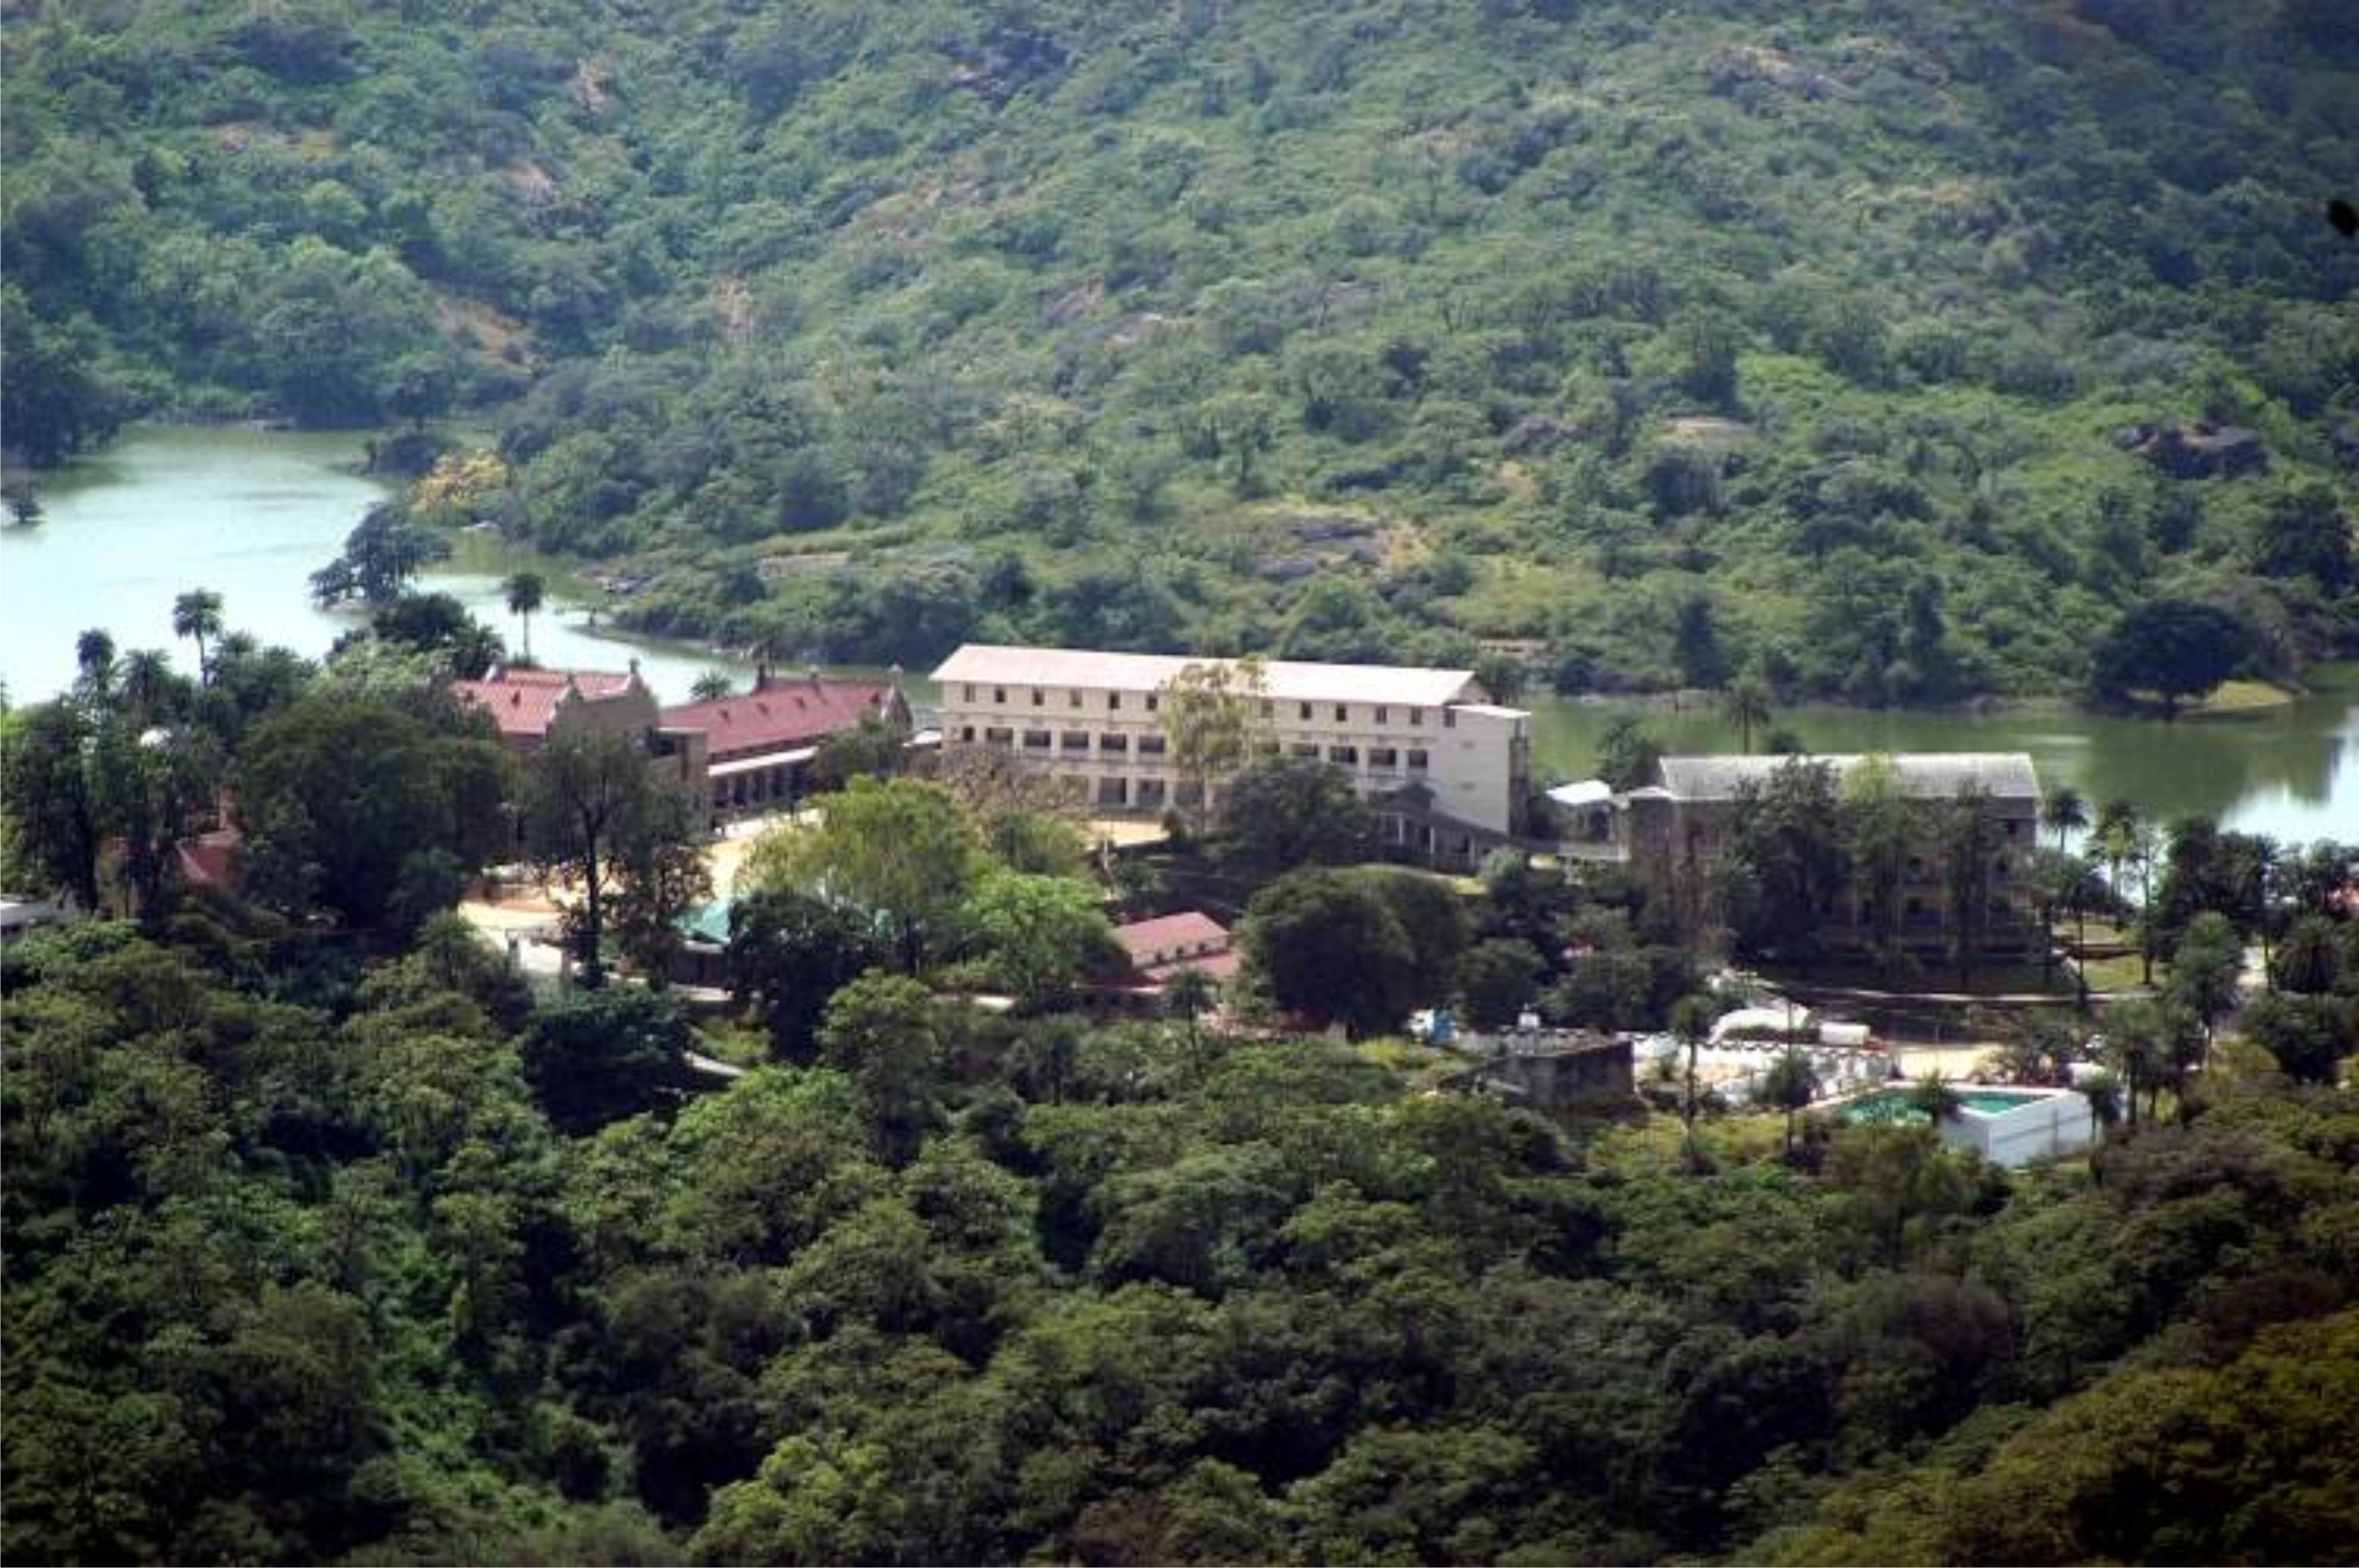 St. Mary's High School, Mt. Abu